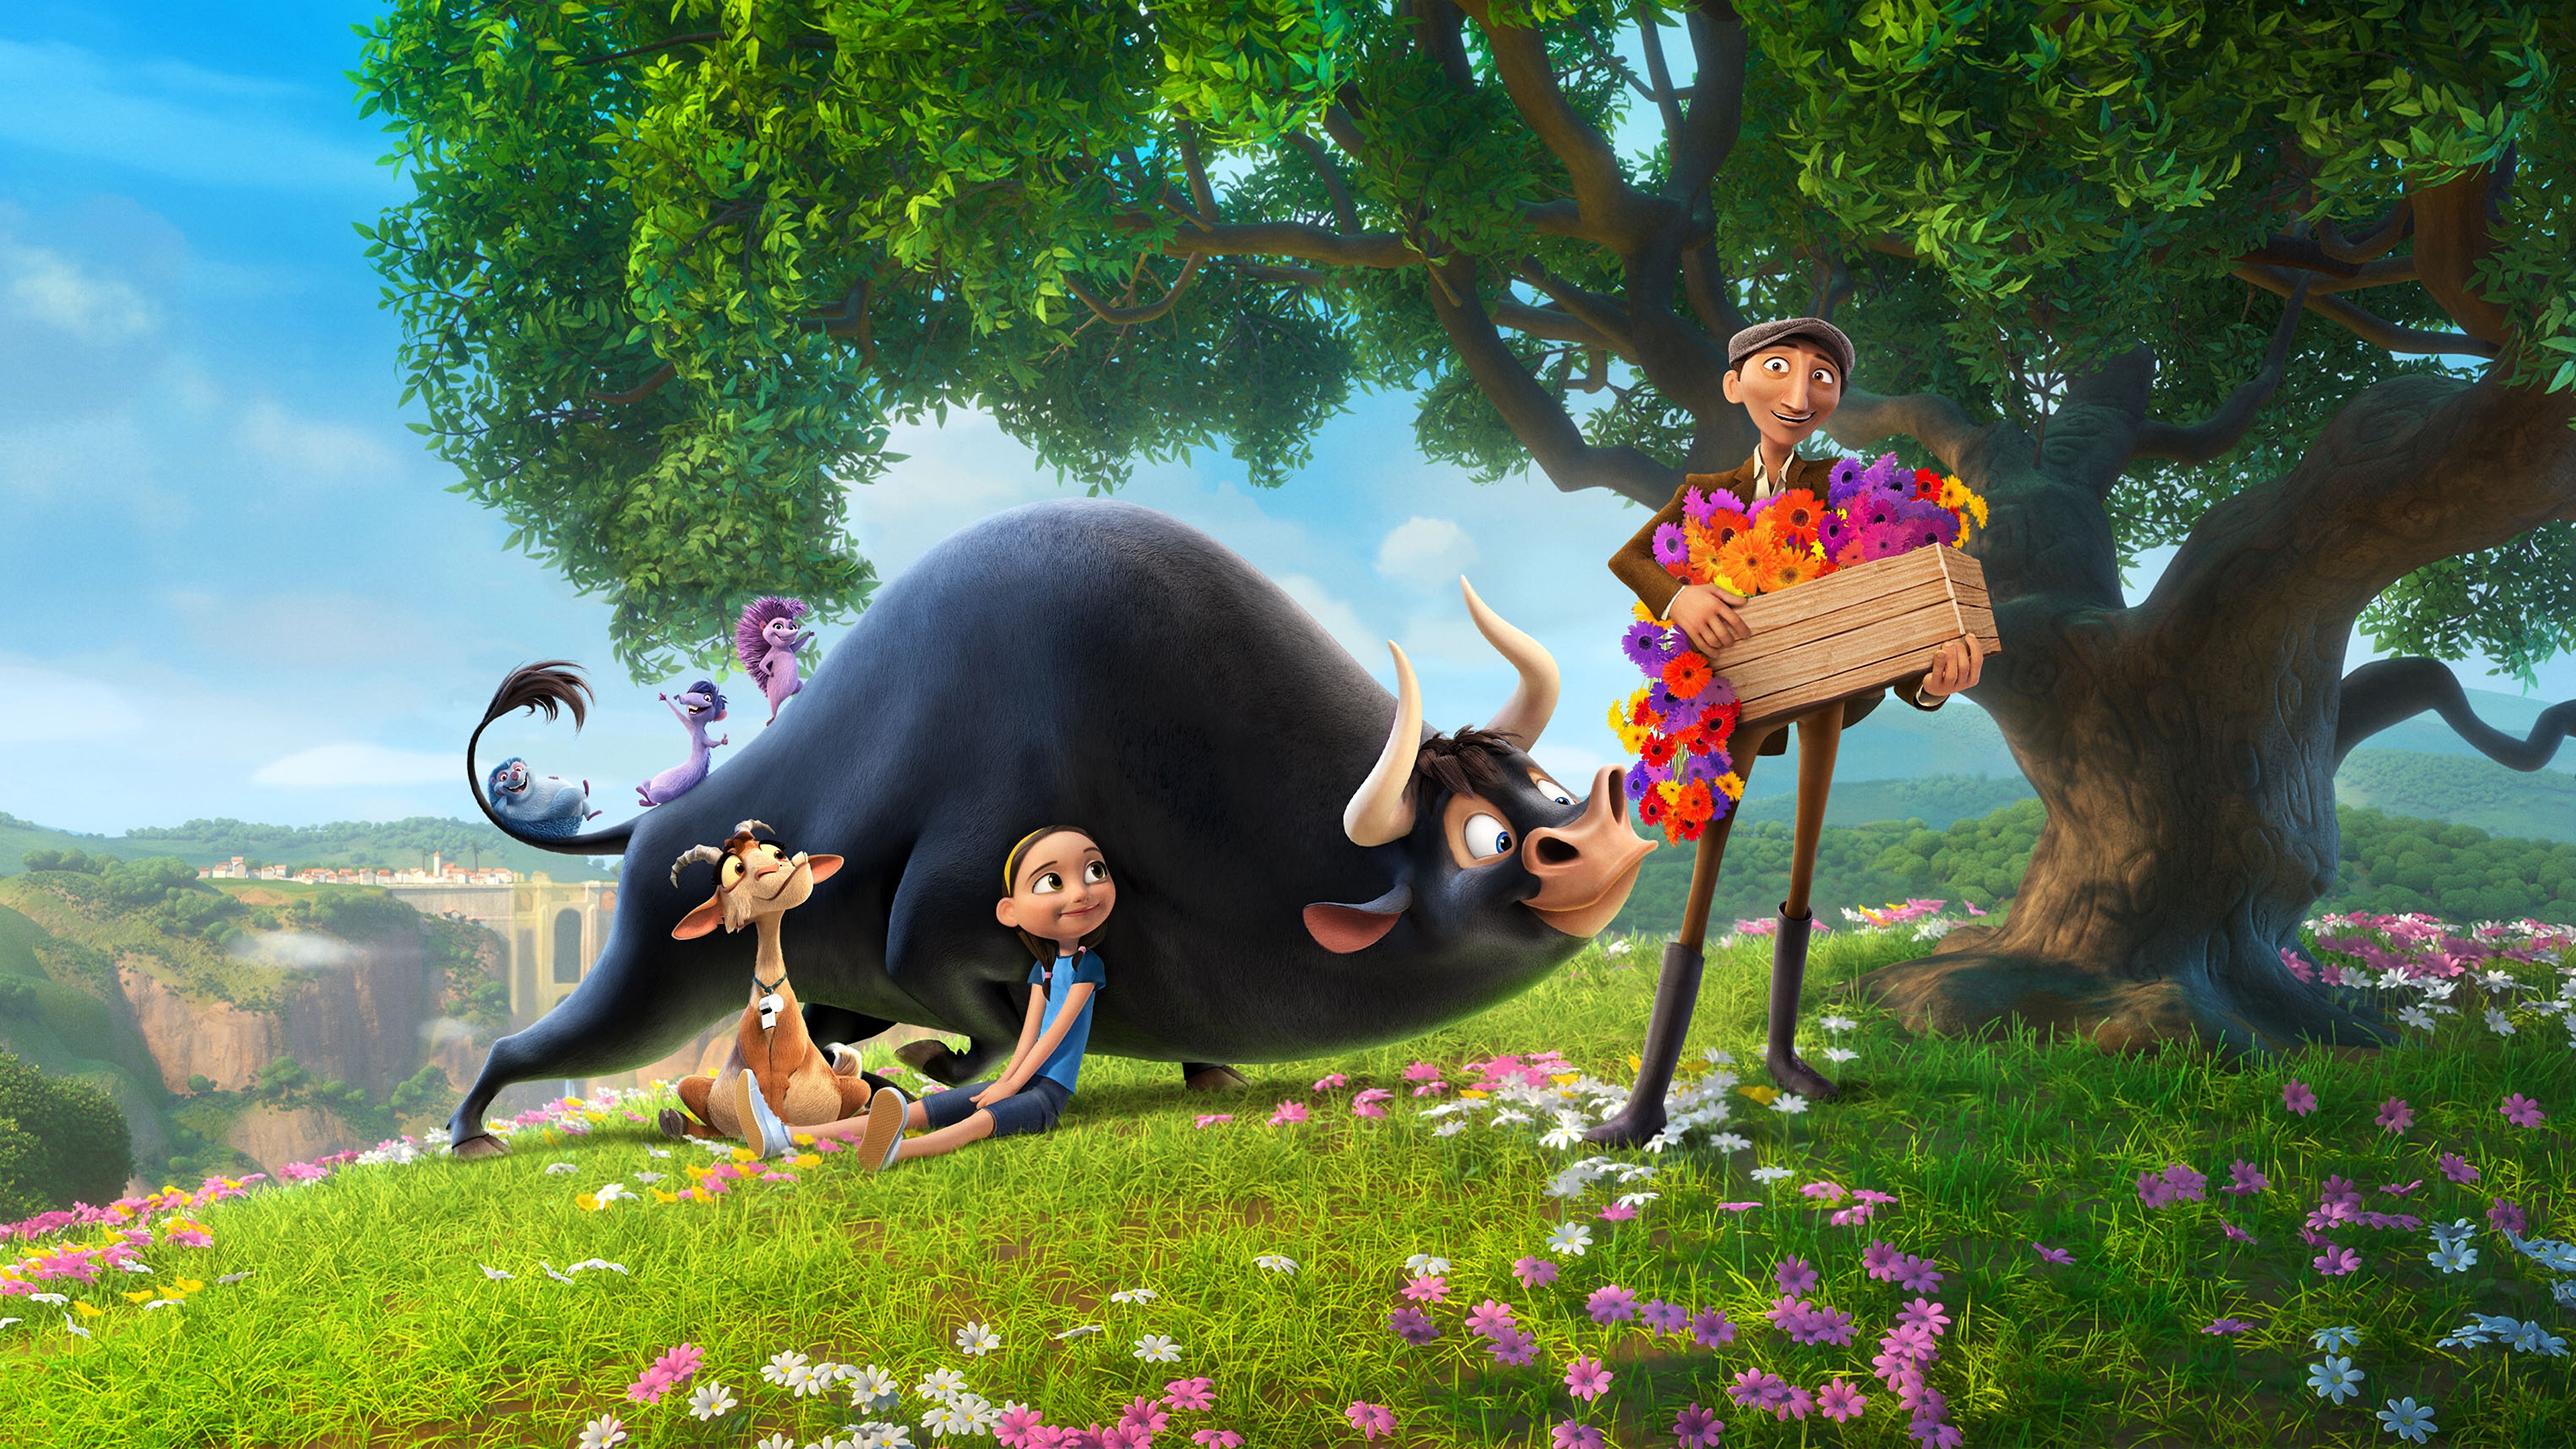 Ferdinand Blue Sky Studios Animated Movie 4k, HD Movies ...